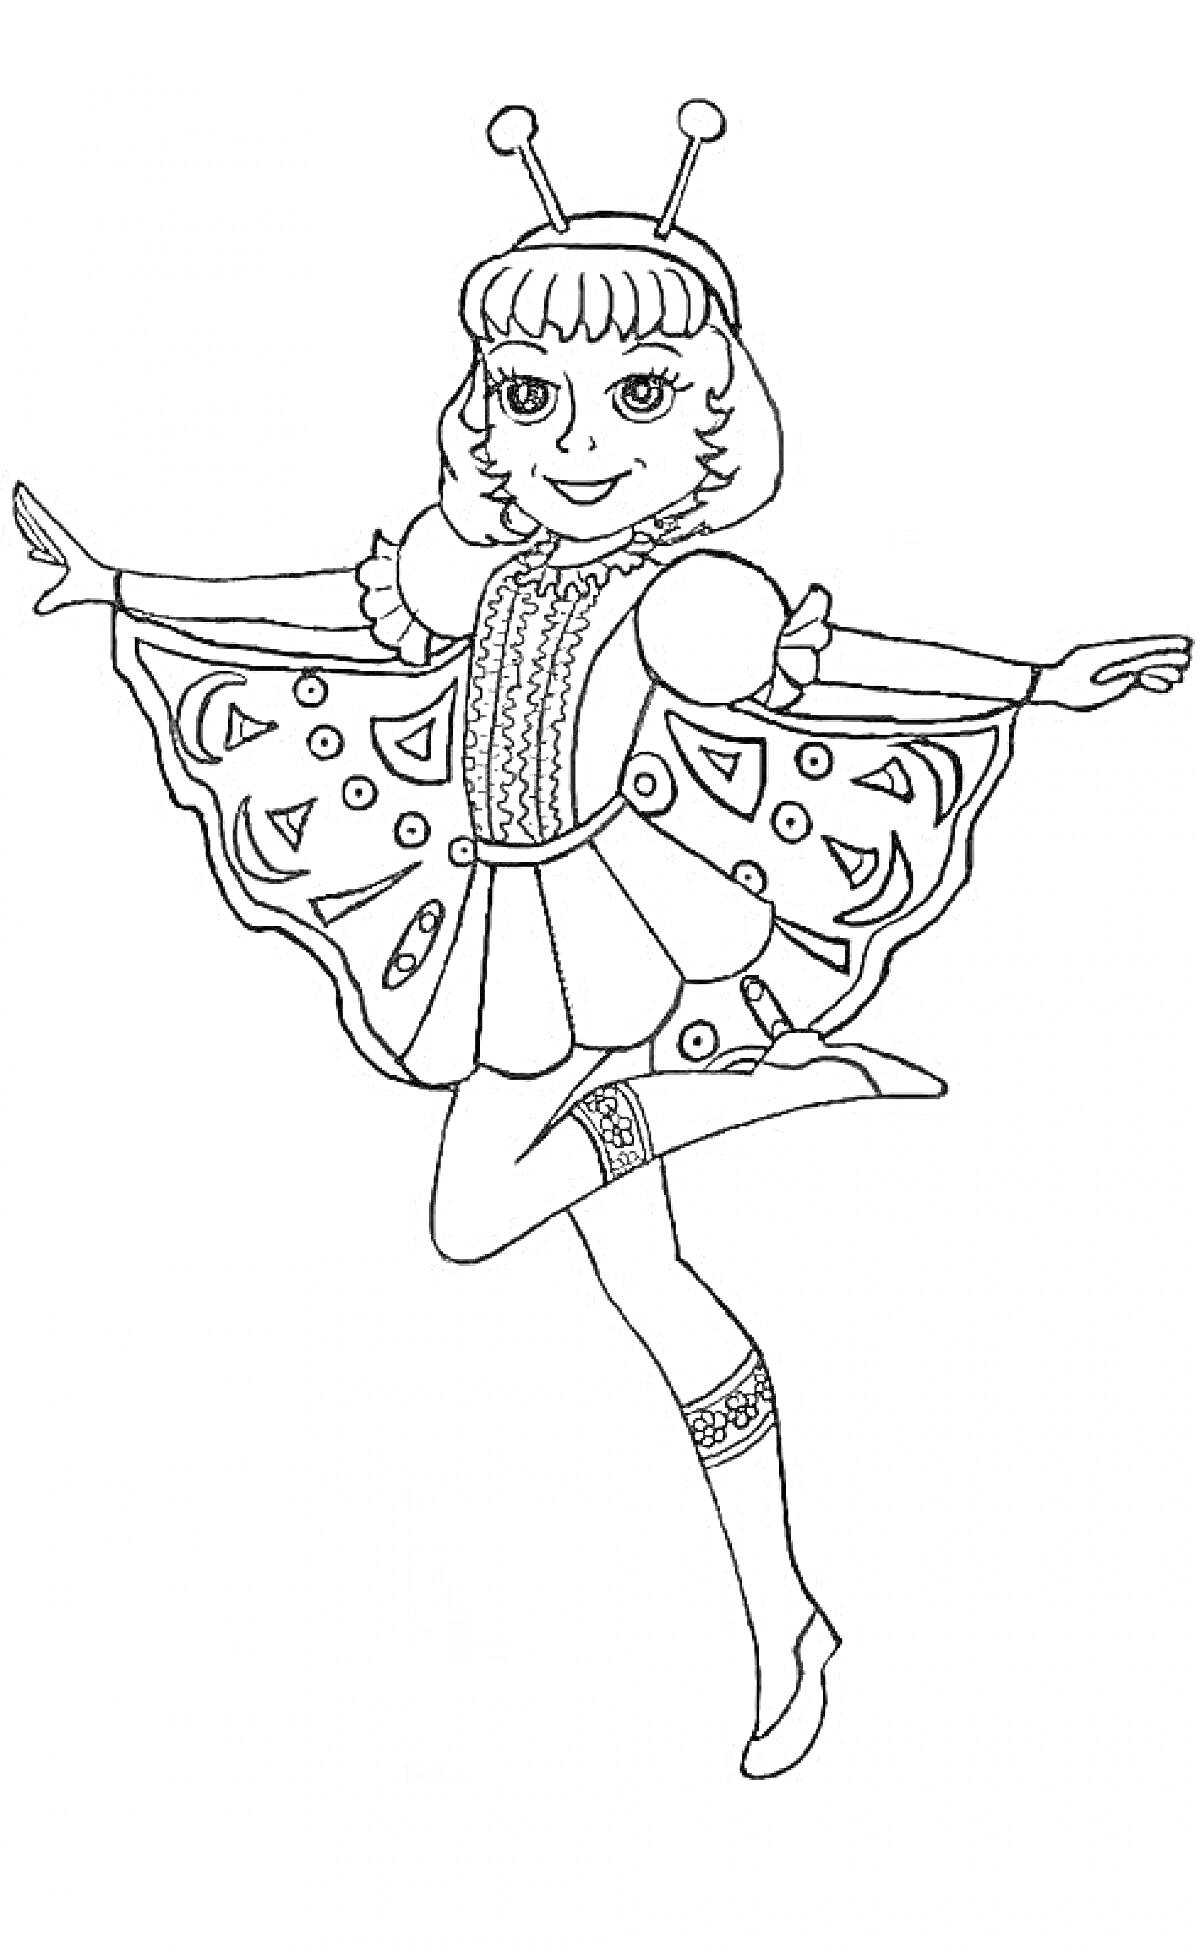 Раскраска Девочка в новогоднем костюме бабочки с антеннами на голове, крыльями с узором и нарядным платьем с узорами и пышными рукавами.